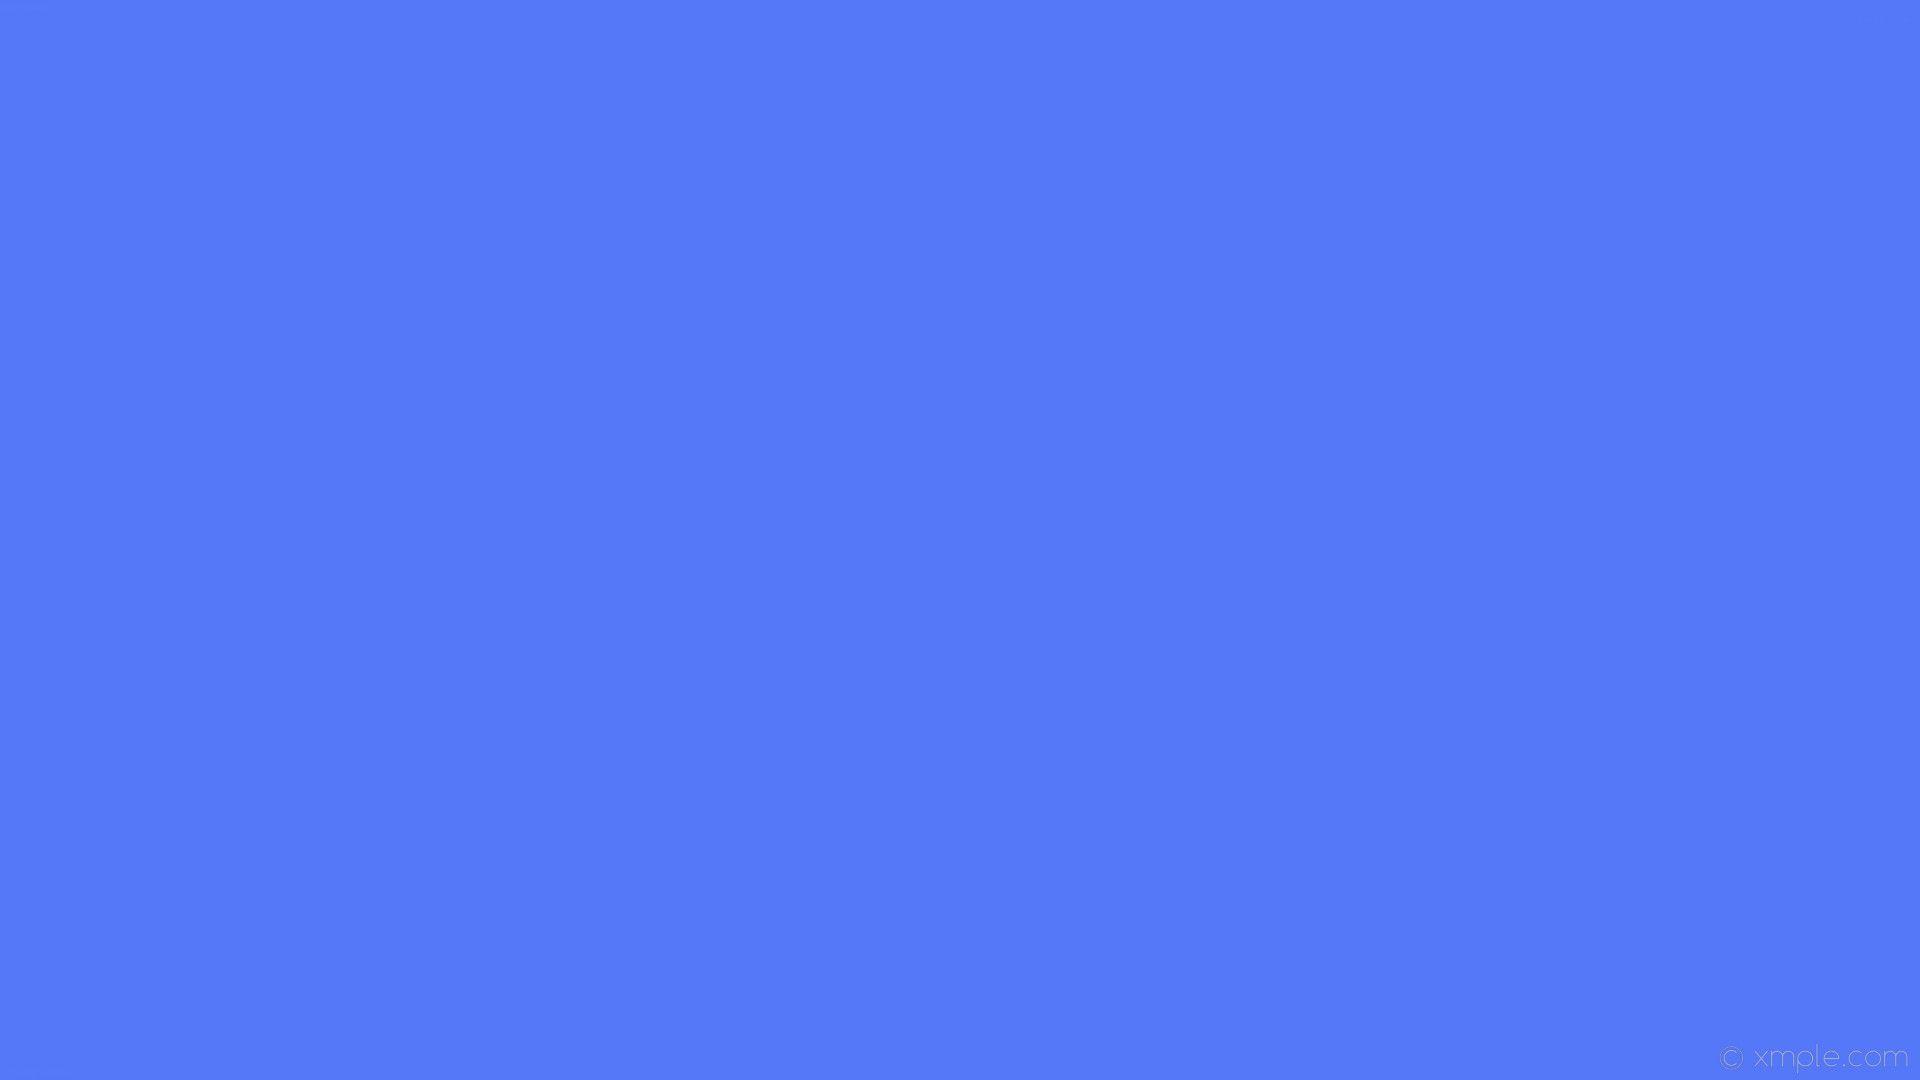 1920x1080 Blue Plain